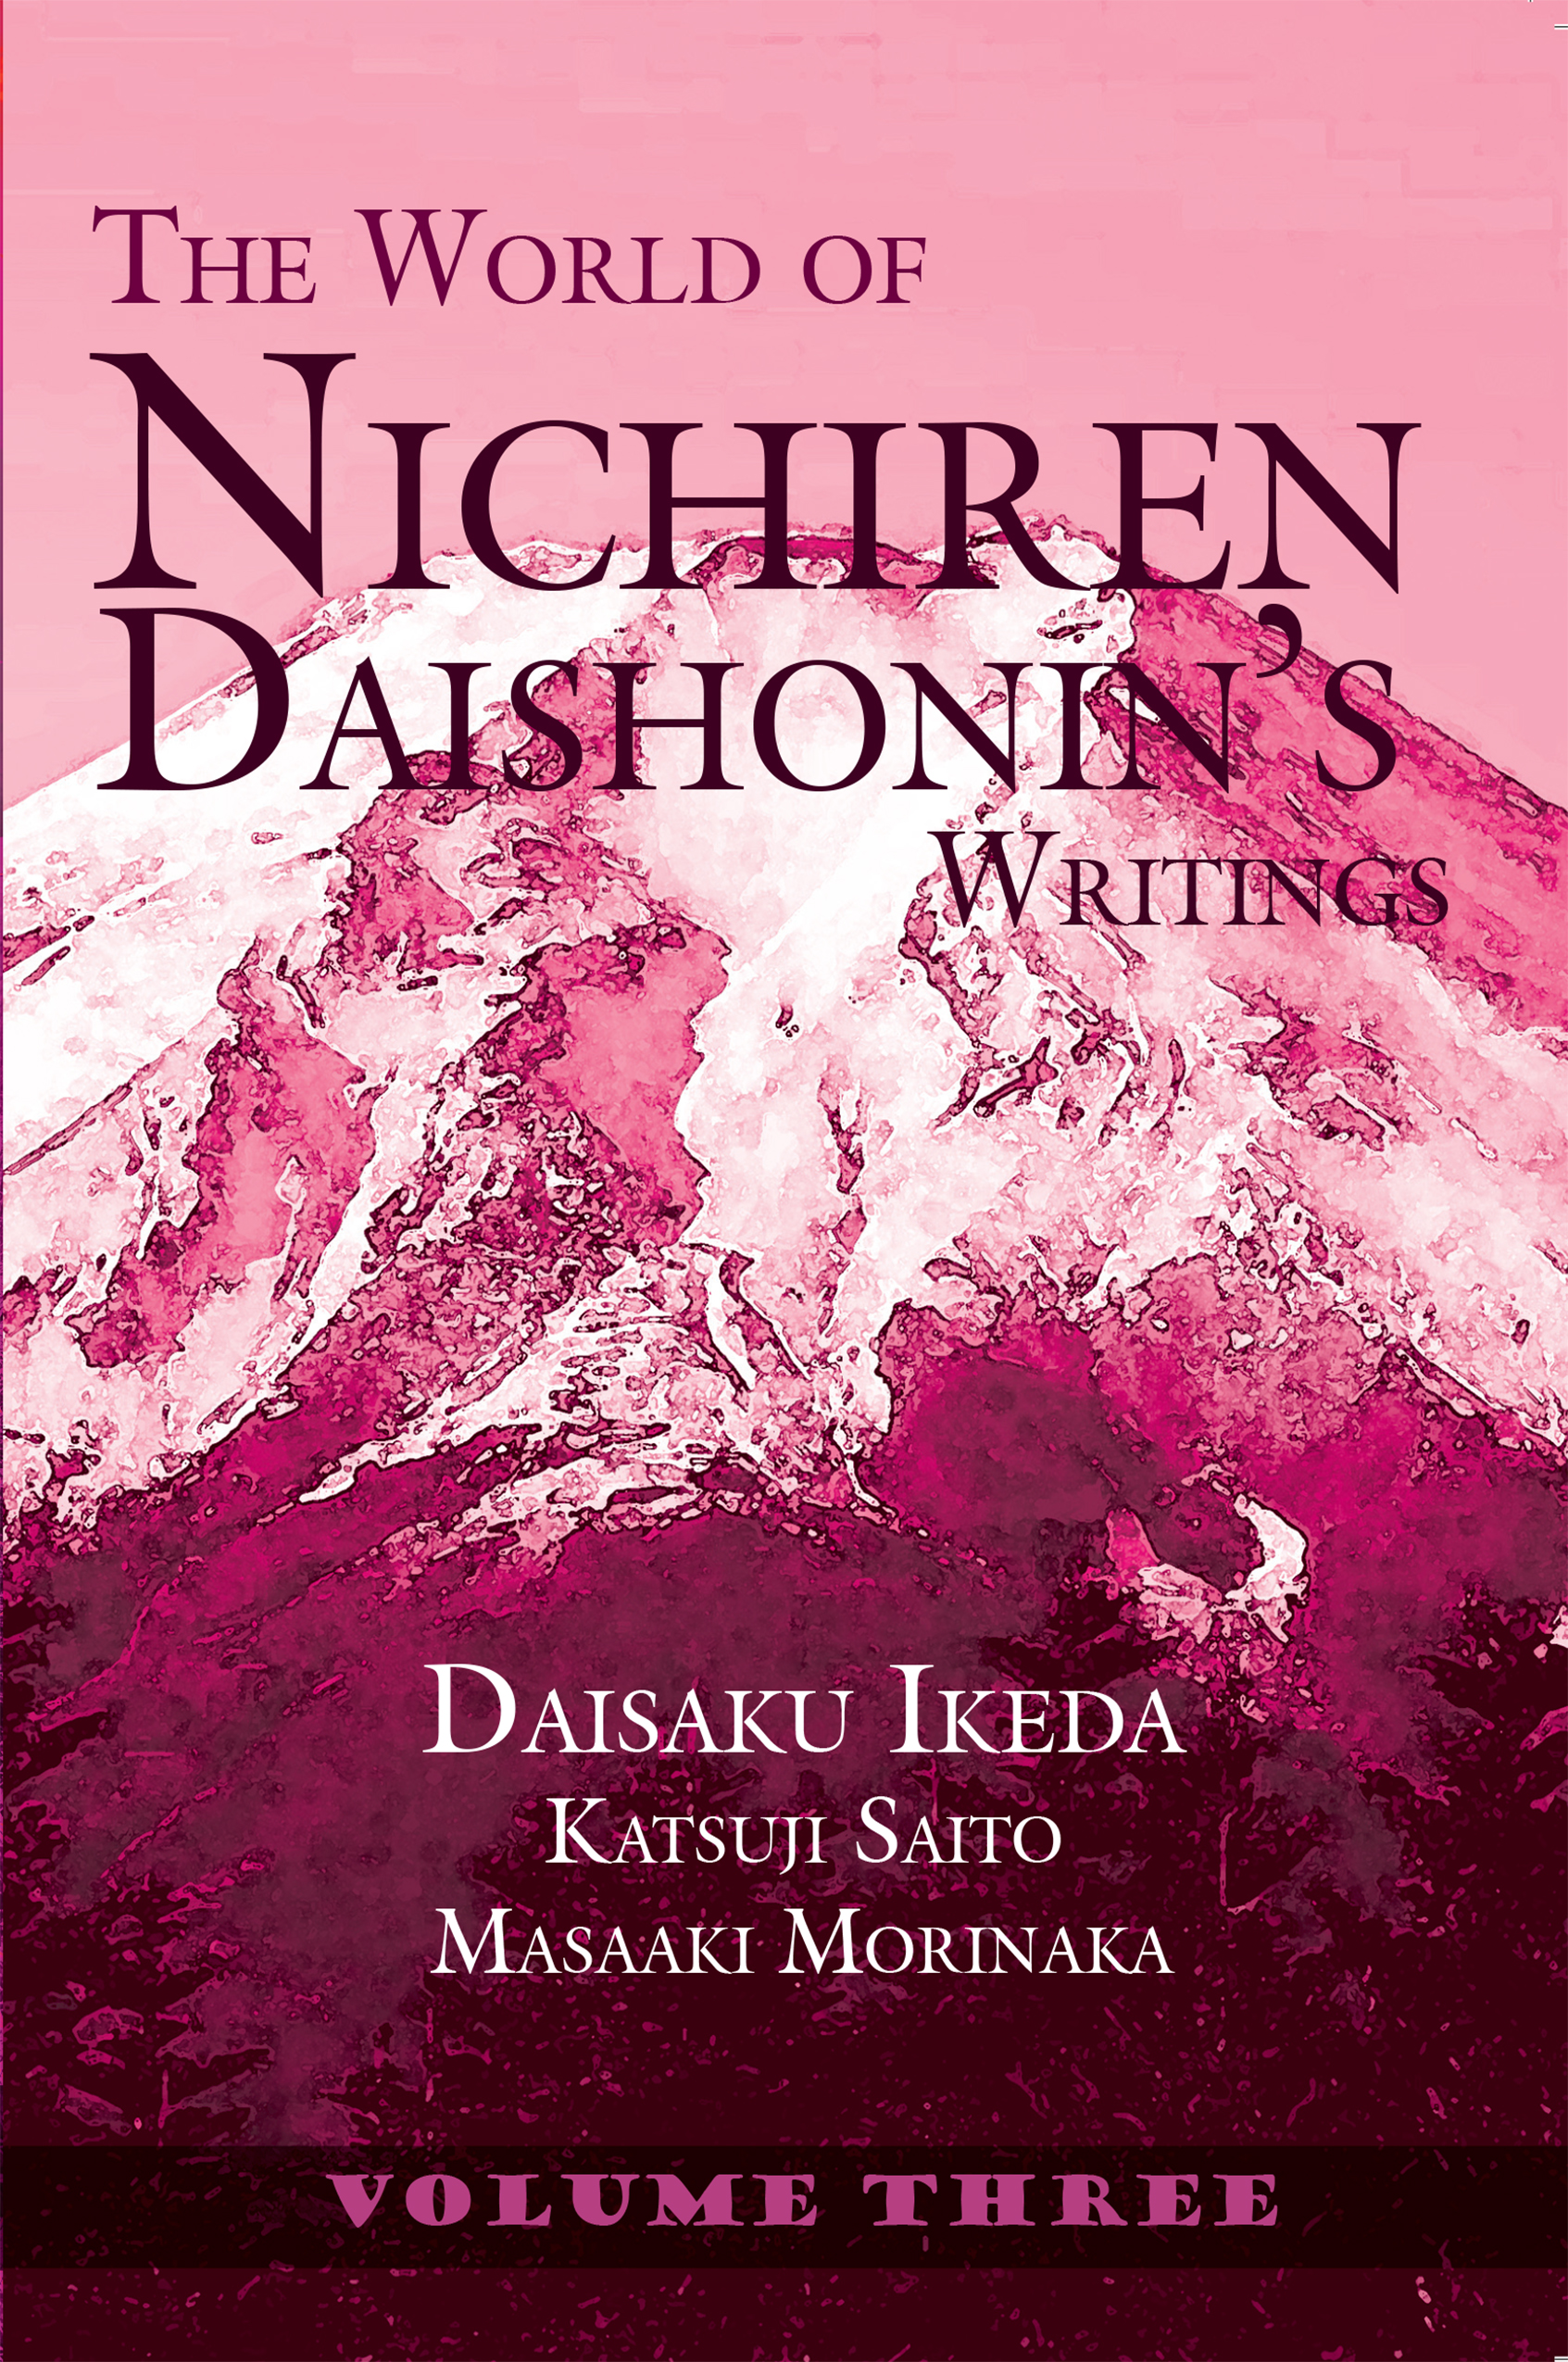 THE WORLD OF NICHIREN DAISHONIN’S WRITINGS VOL 3